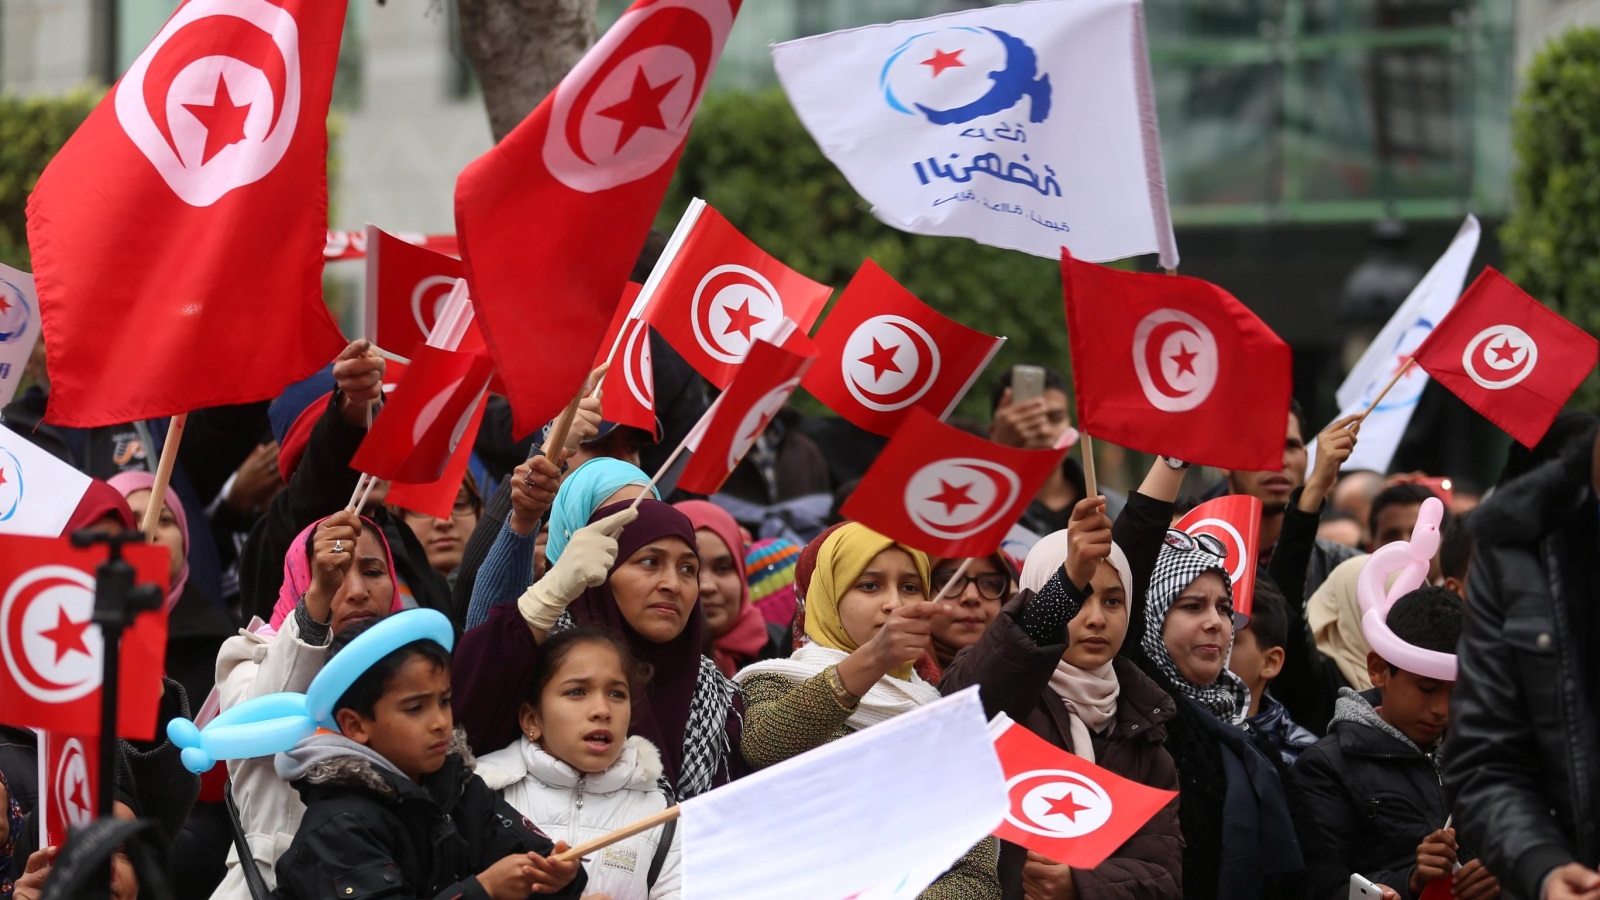 ‪تونسيات يشاركن في احتفال بمناسبة مرور ست سنوات على الثورة‬ (رويترز)